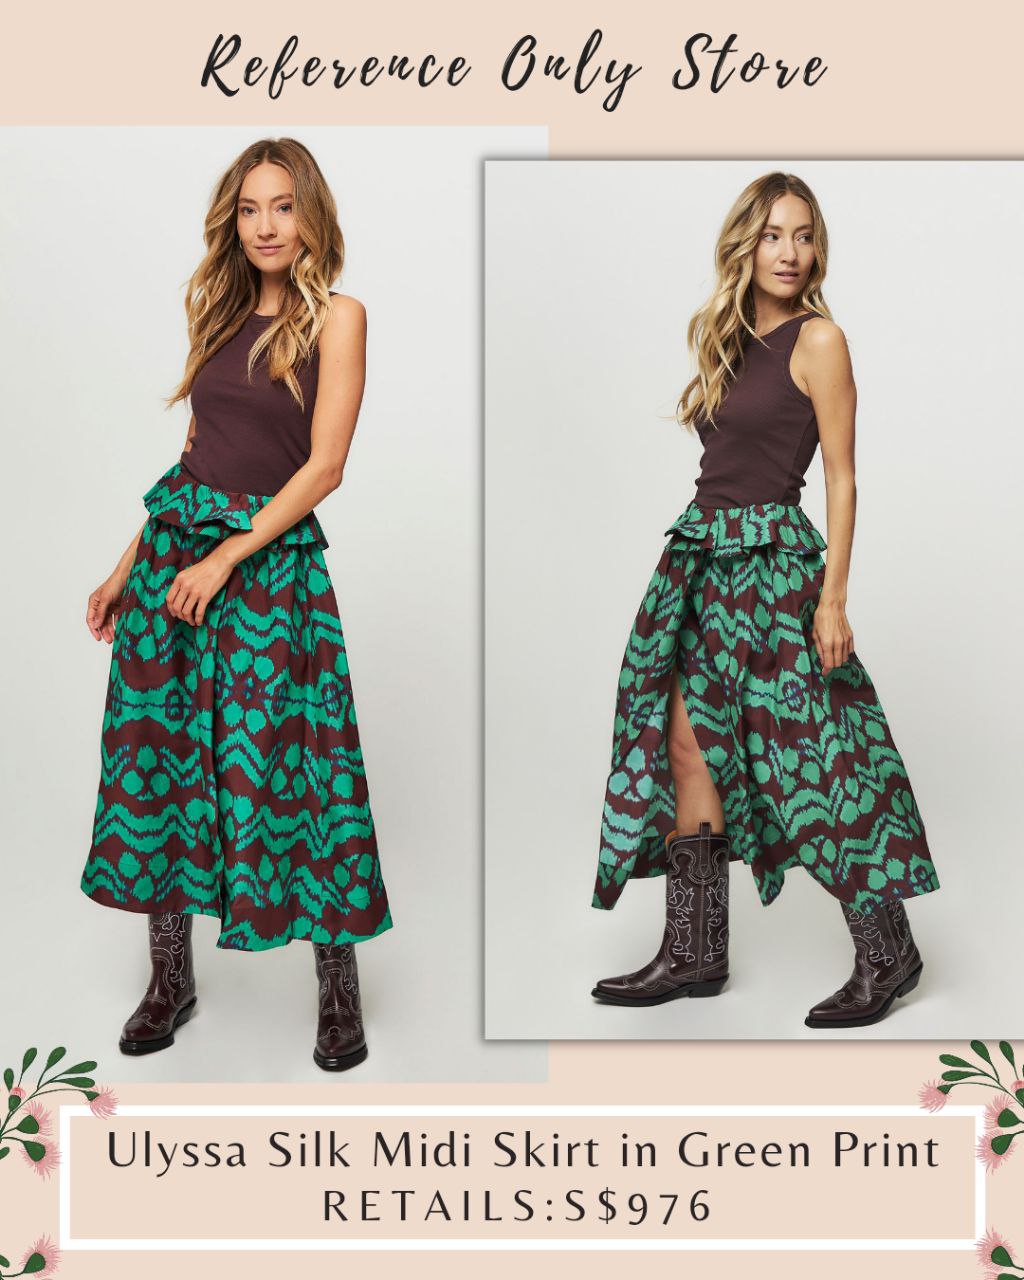 UJ Ulyssa Silk Midi Skirt in Green print